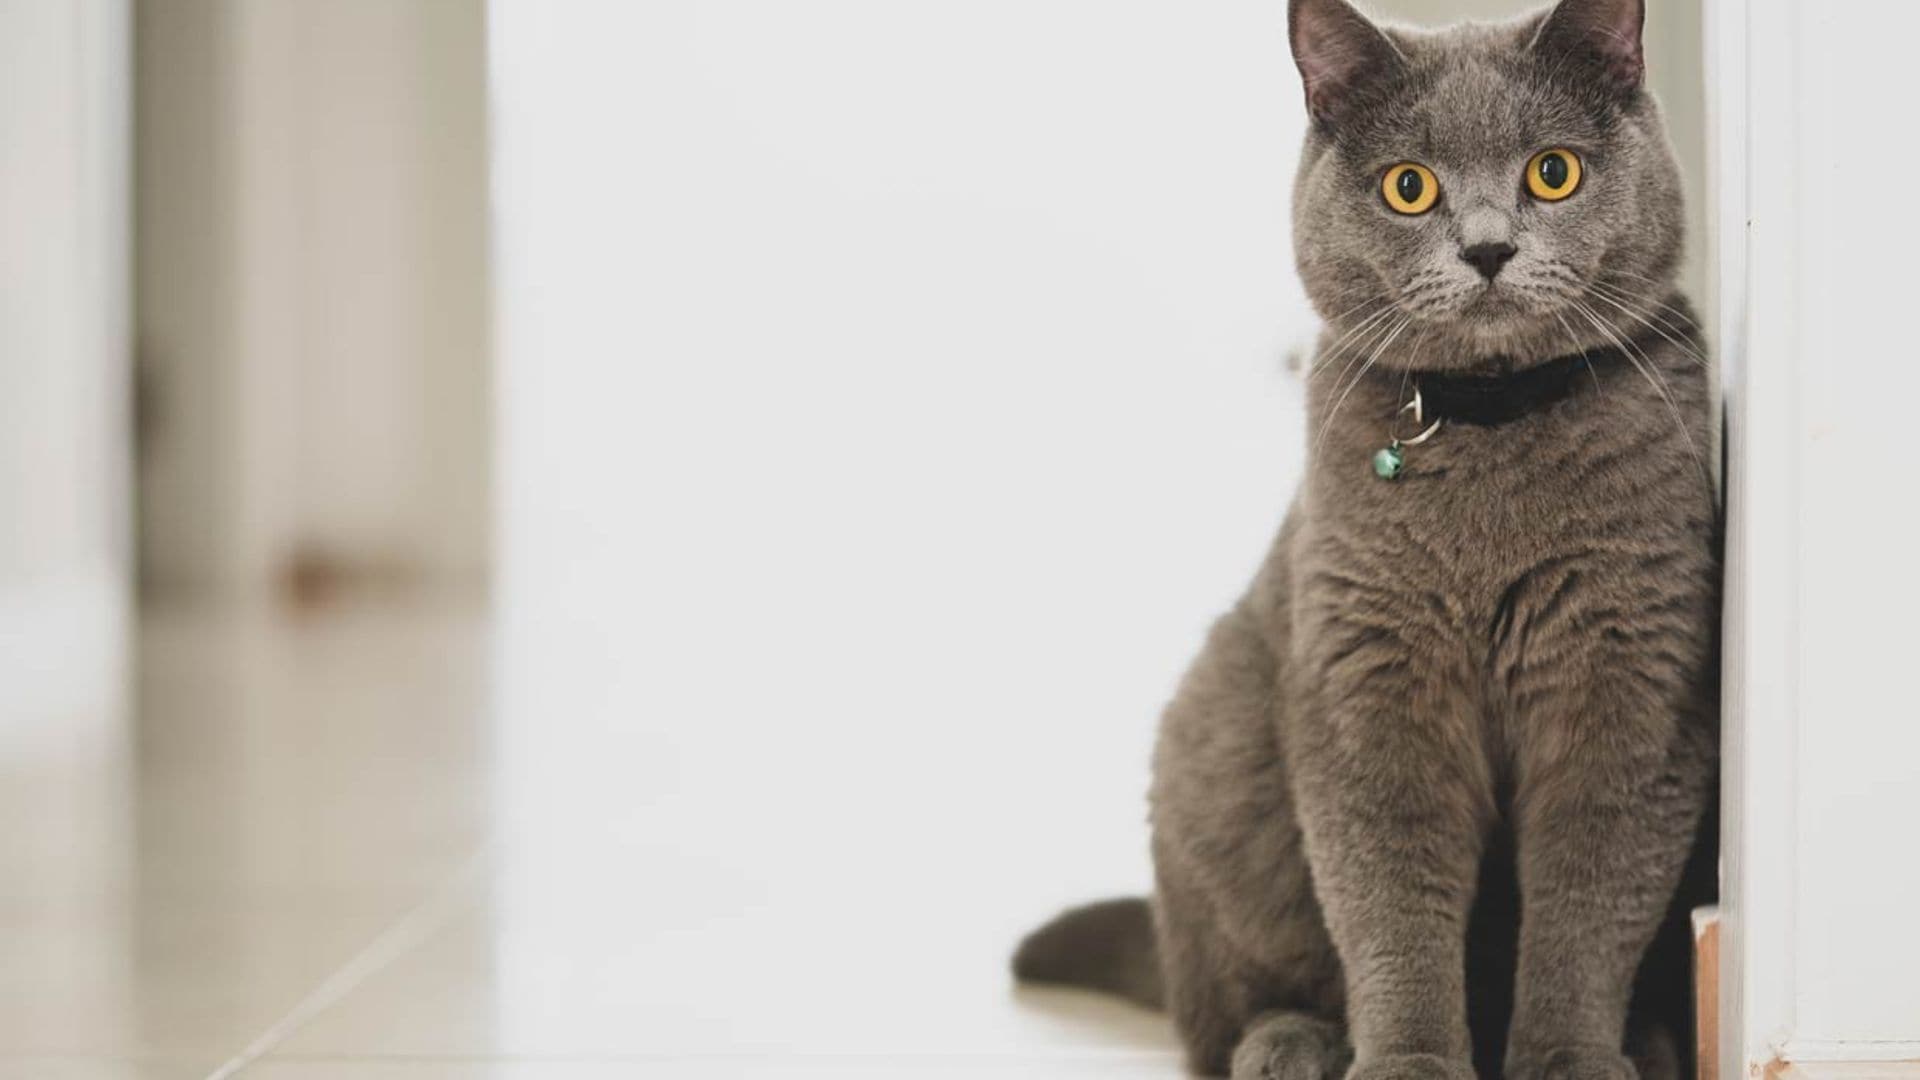 Gato british shorthair, una raza ideal para familias con niños o perros